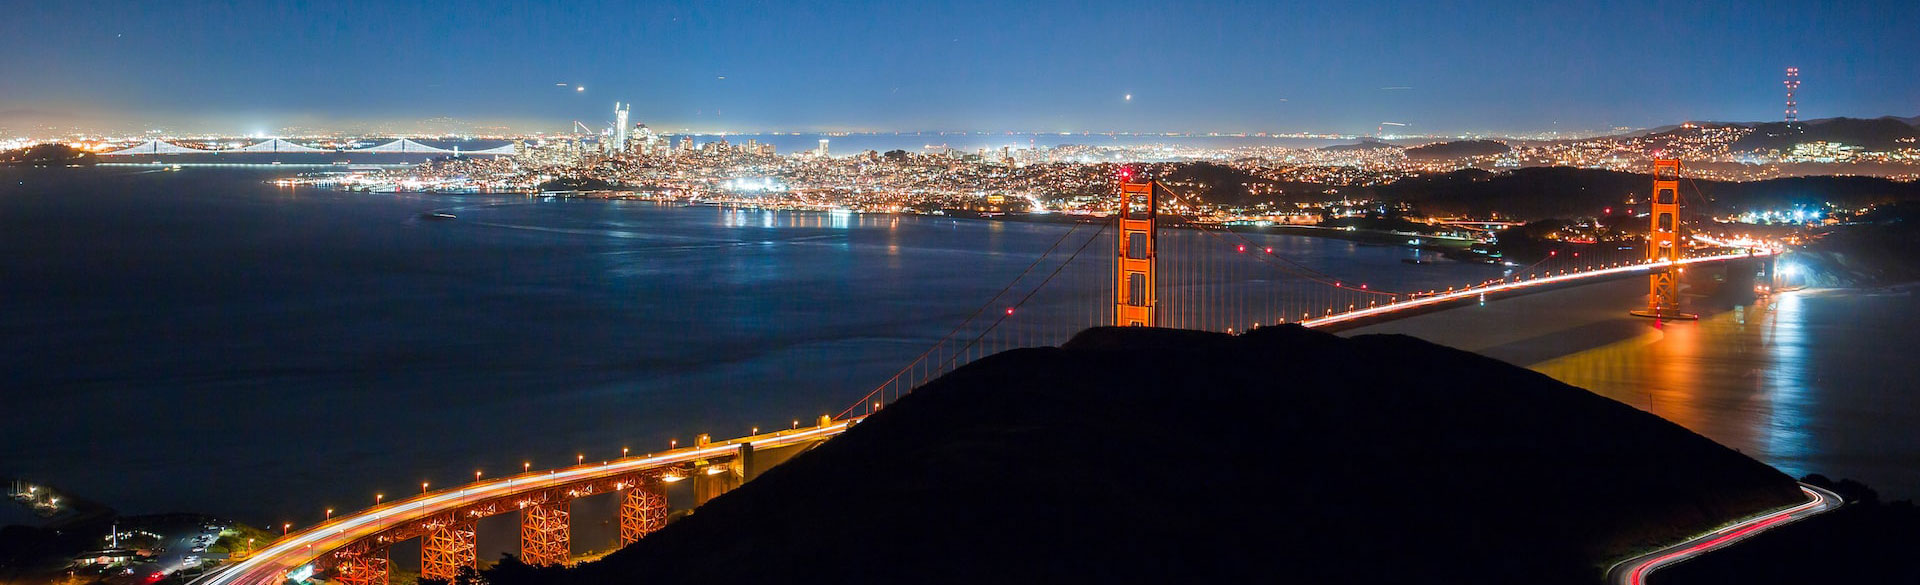 Teluk San Francisco dan Jambatan Golden Gate pada waktu malam